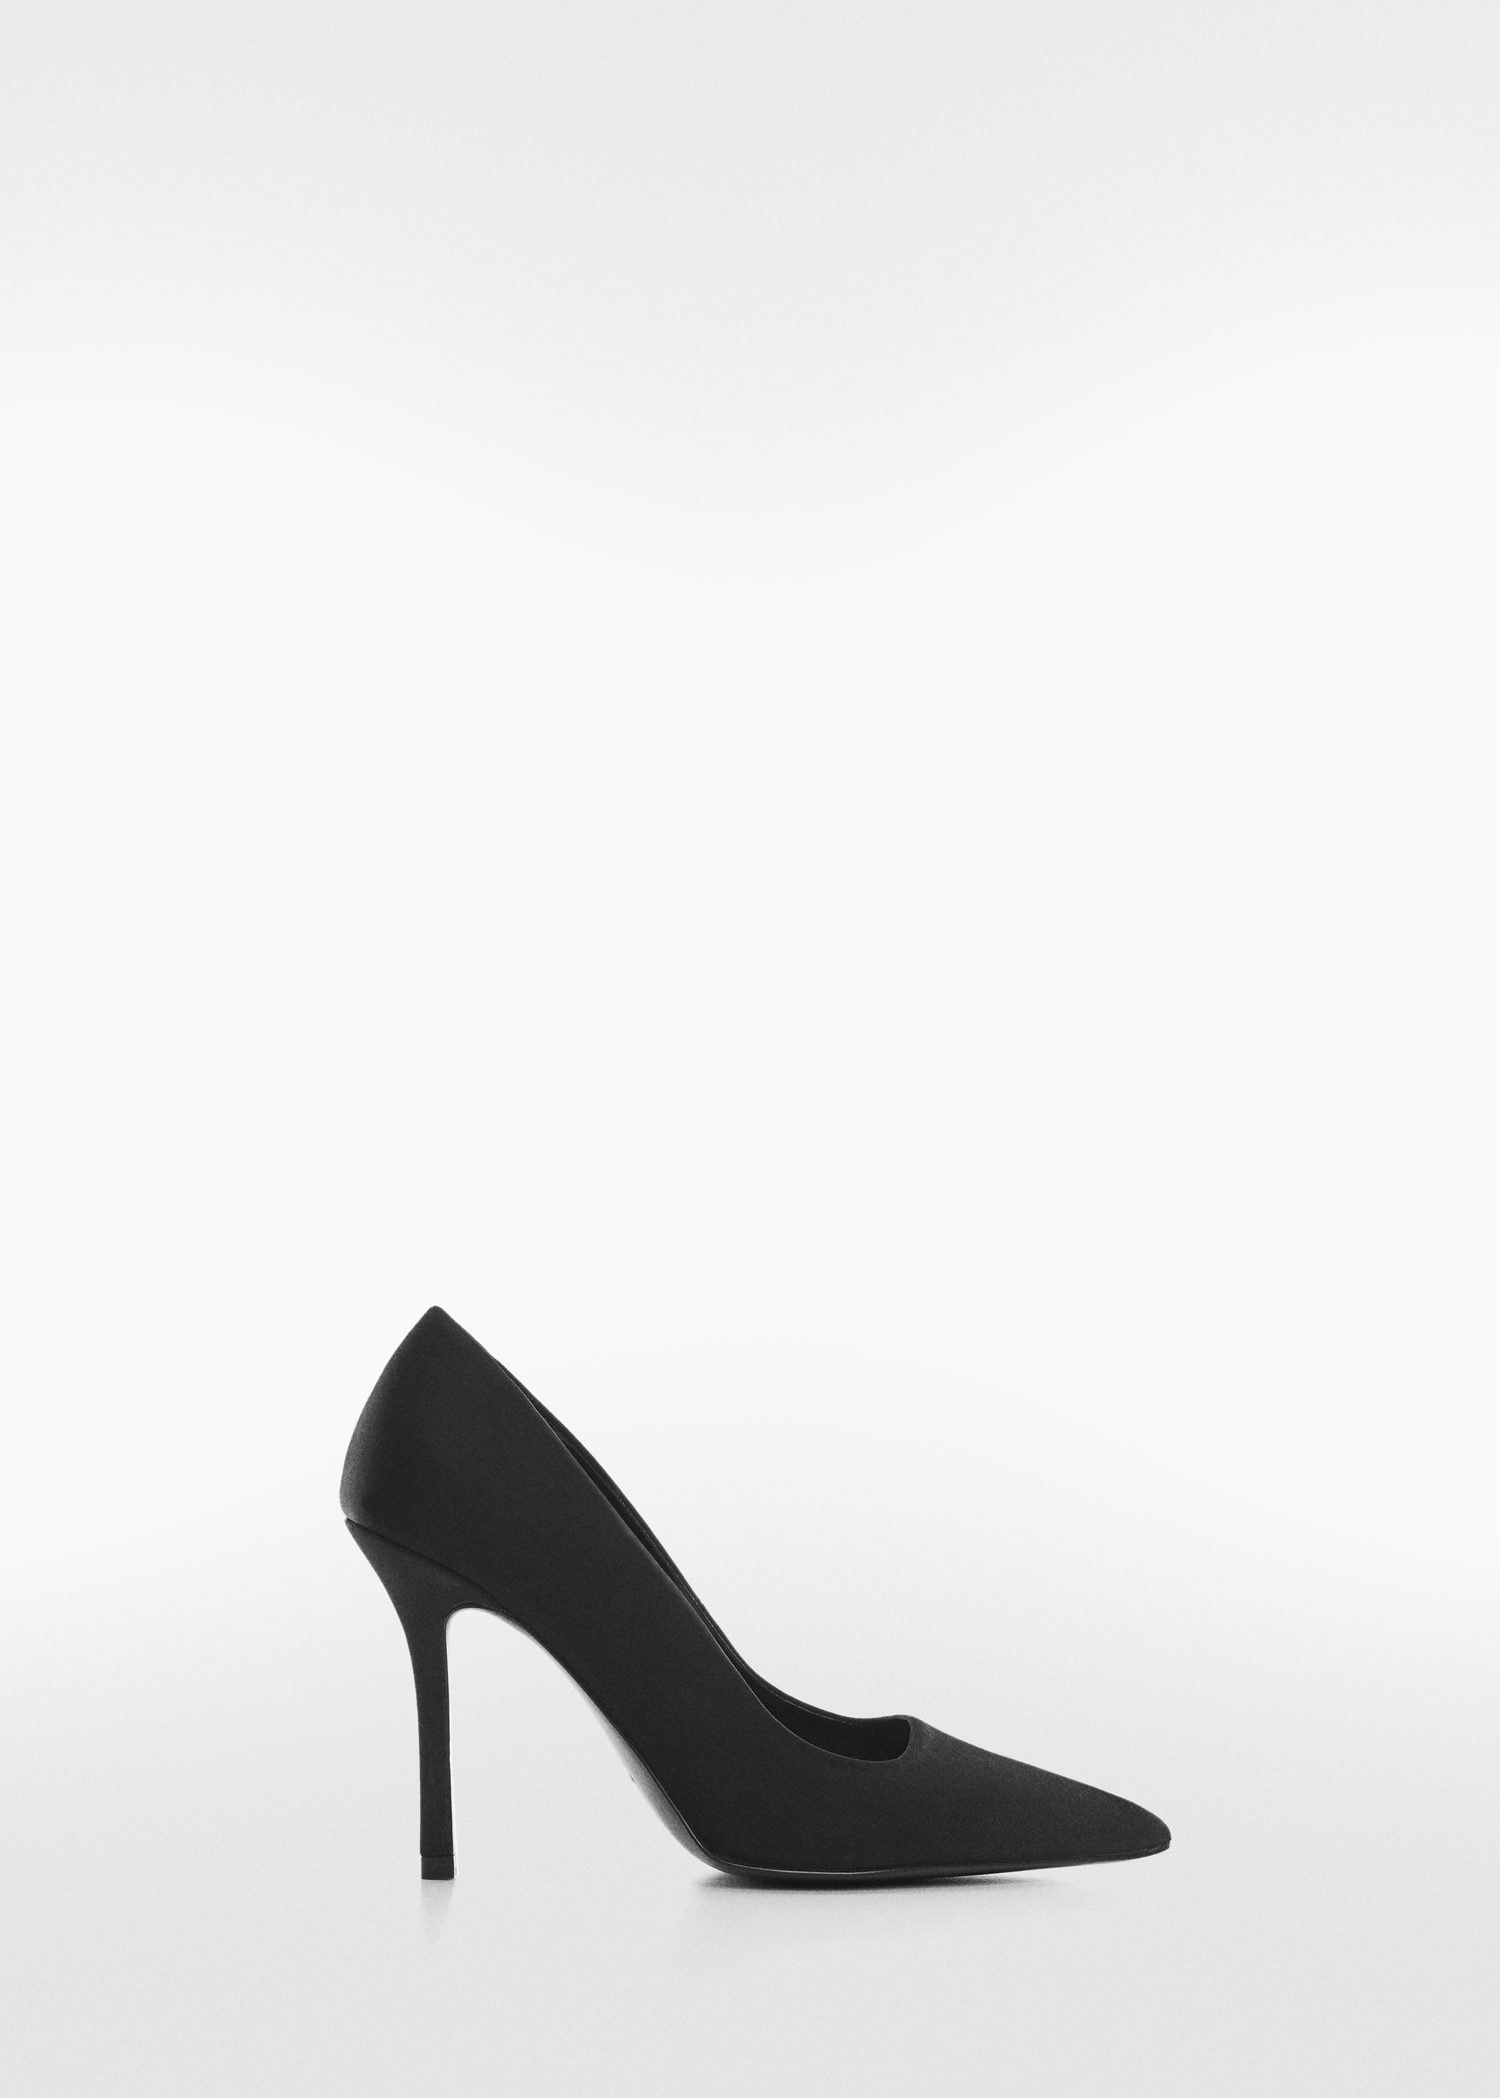 Women's Trendy High Heel Shoes | Guide To Women's Heels | Heels, Super high  heels, Fashion shoes